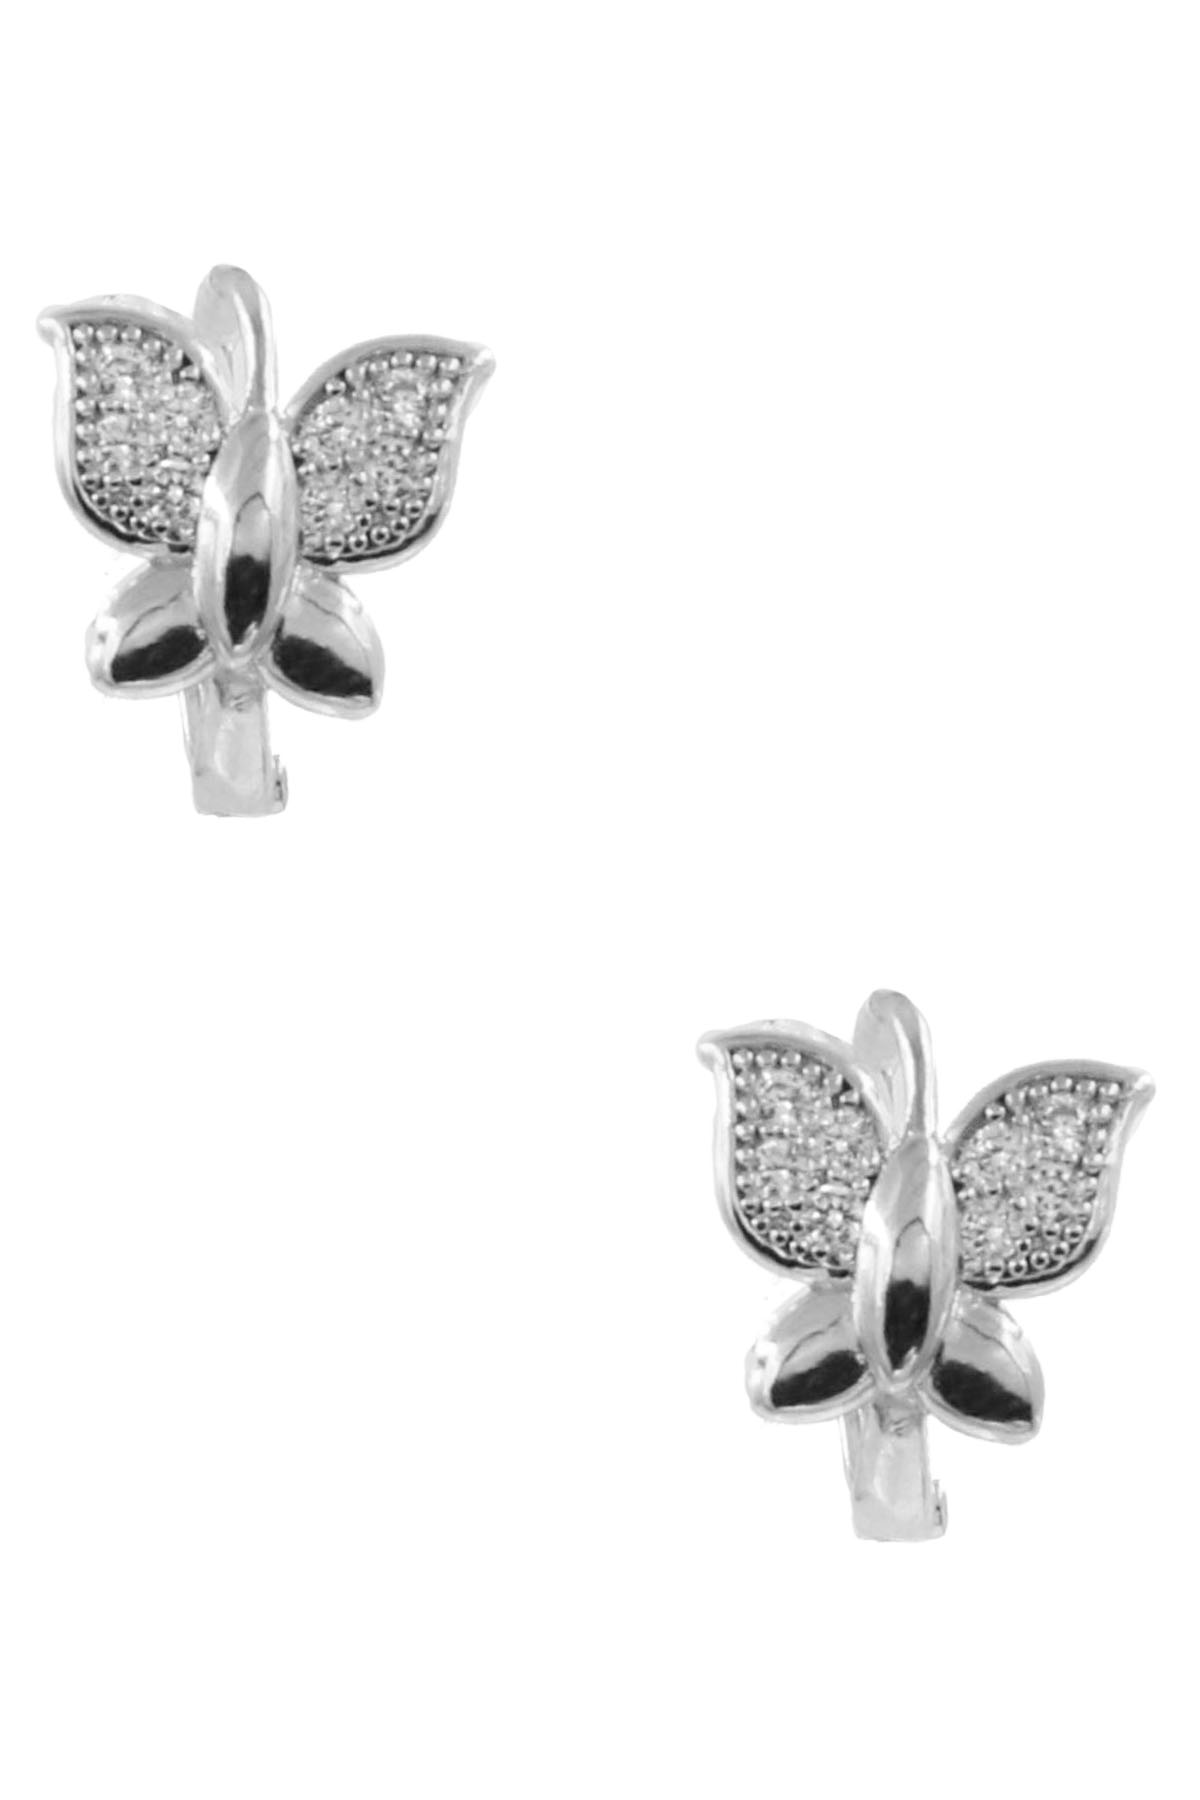 RHODIUM Butterfly Earrings